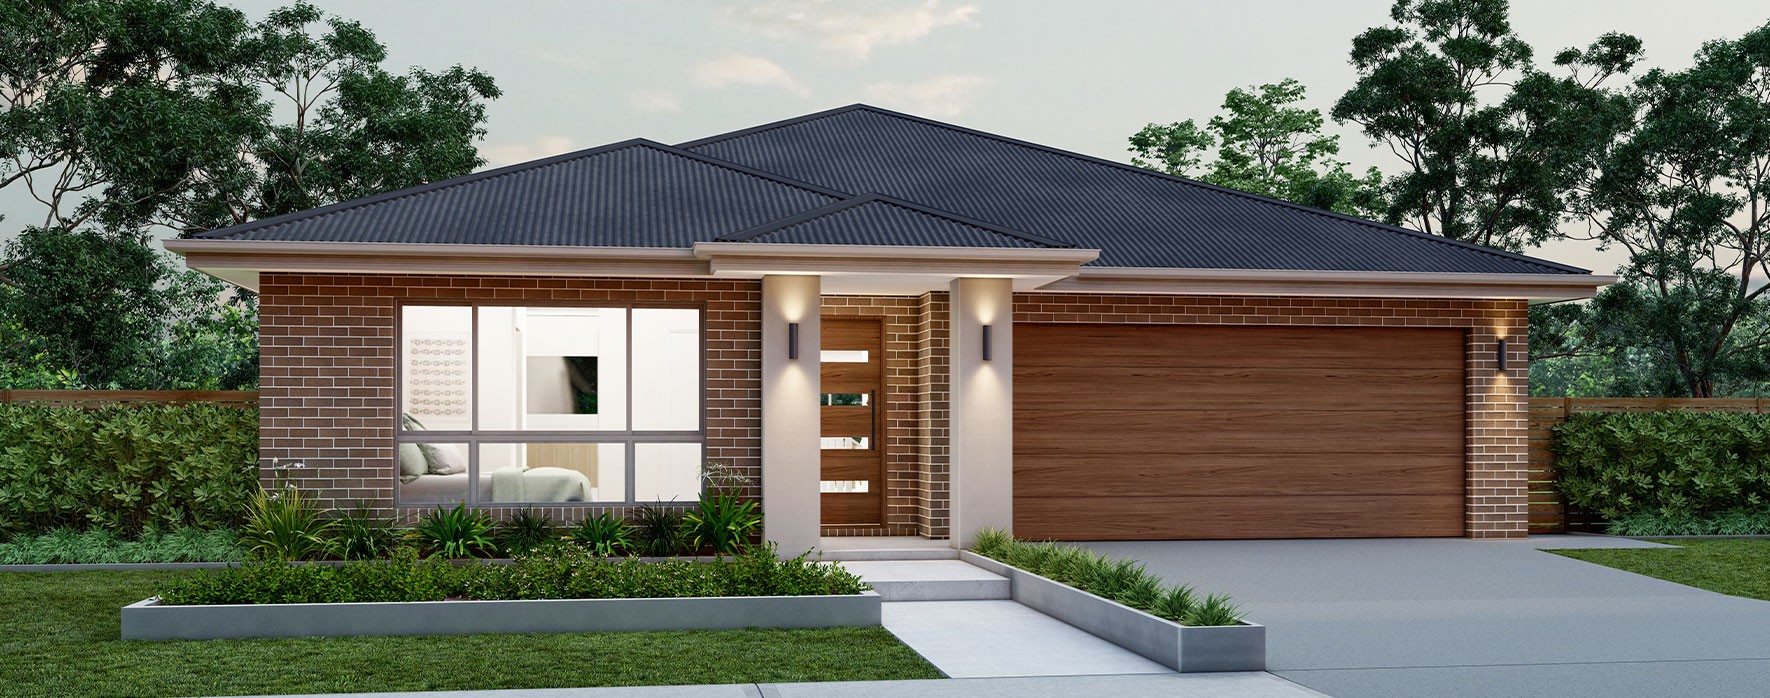 single-storey-home-design-modern-facade